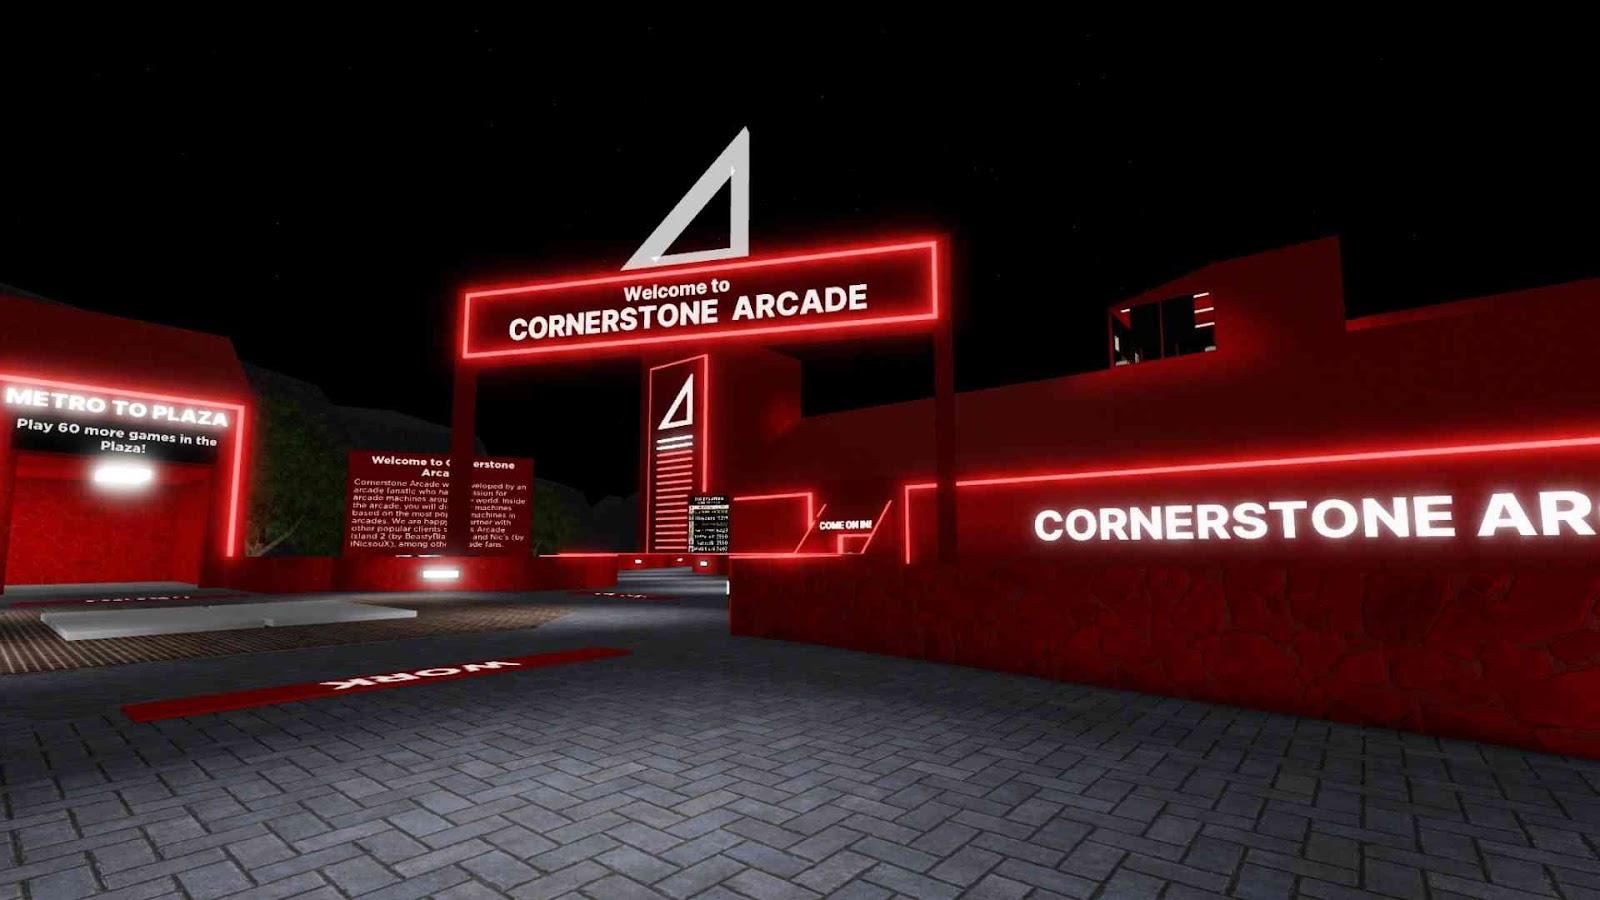 Cornerstone Arcade